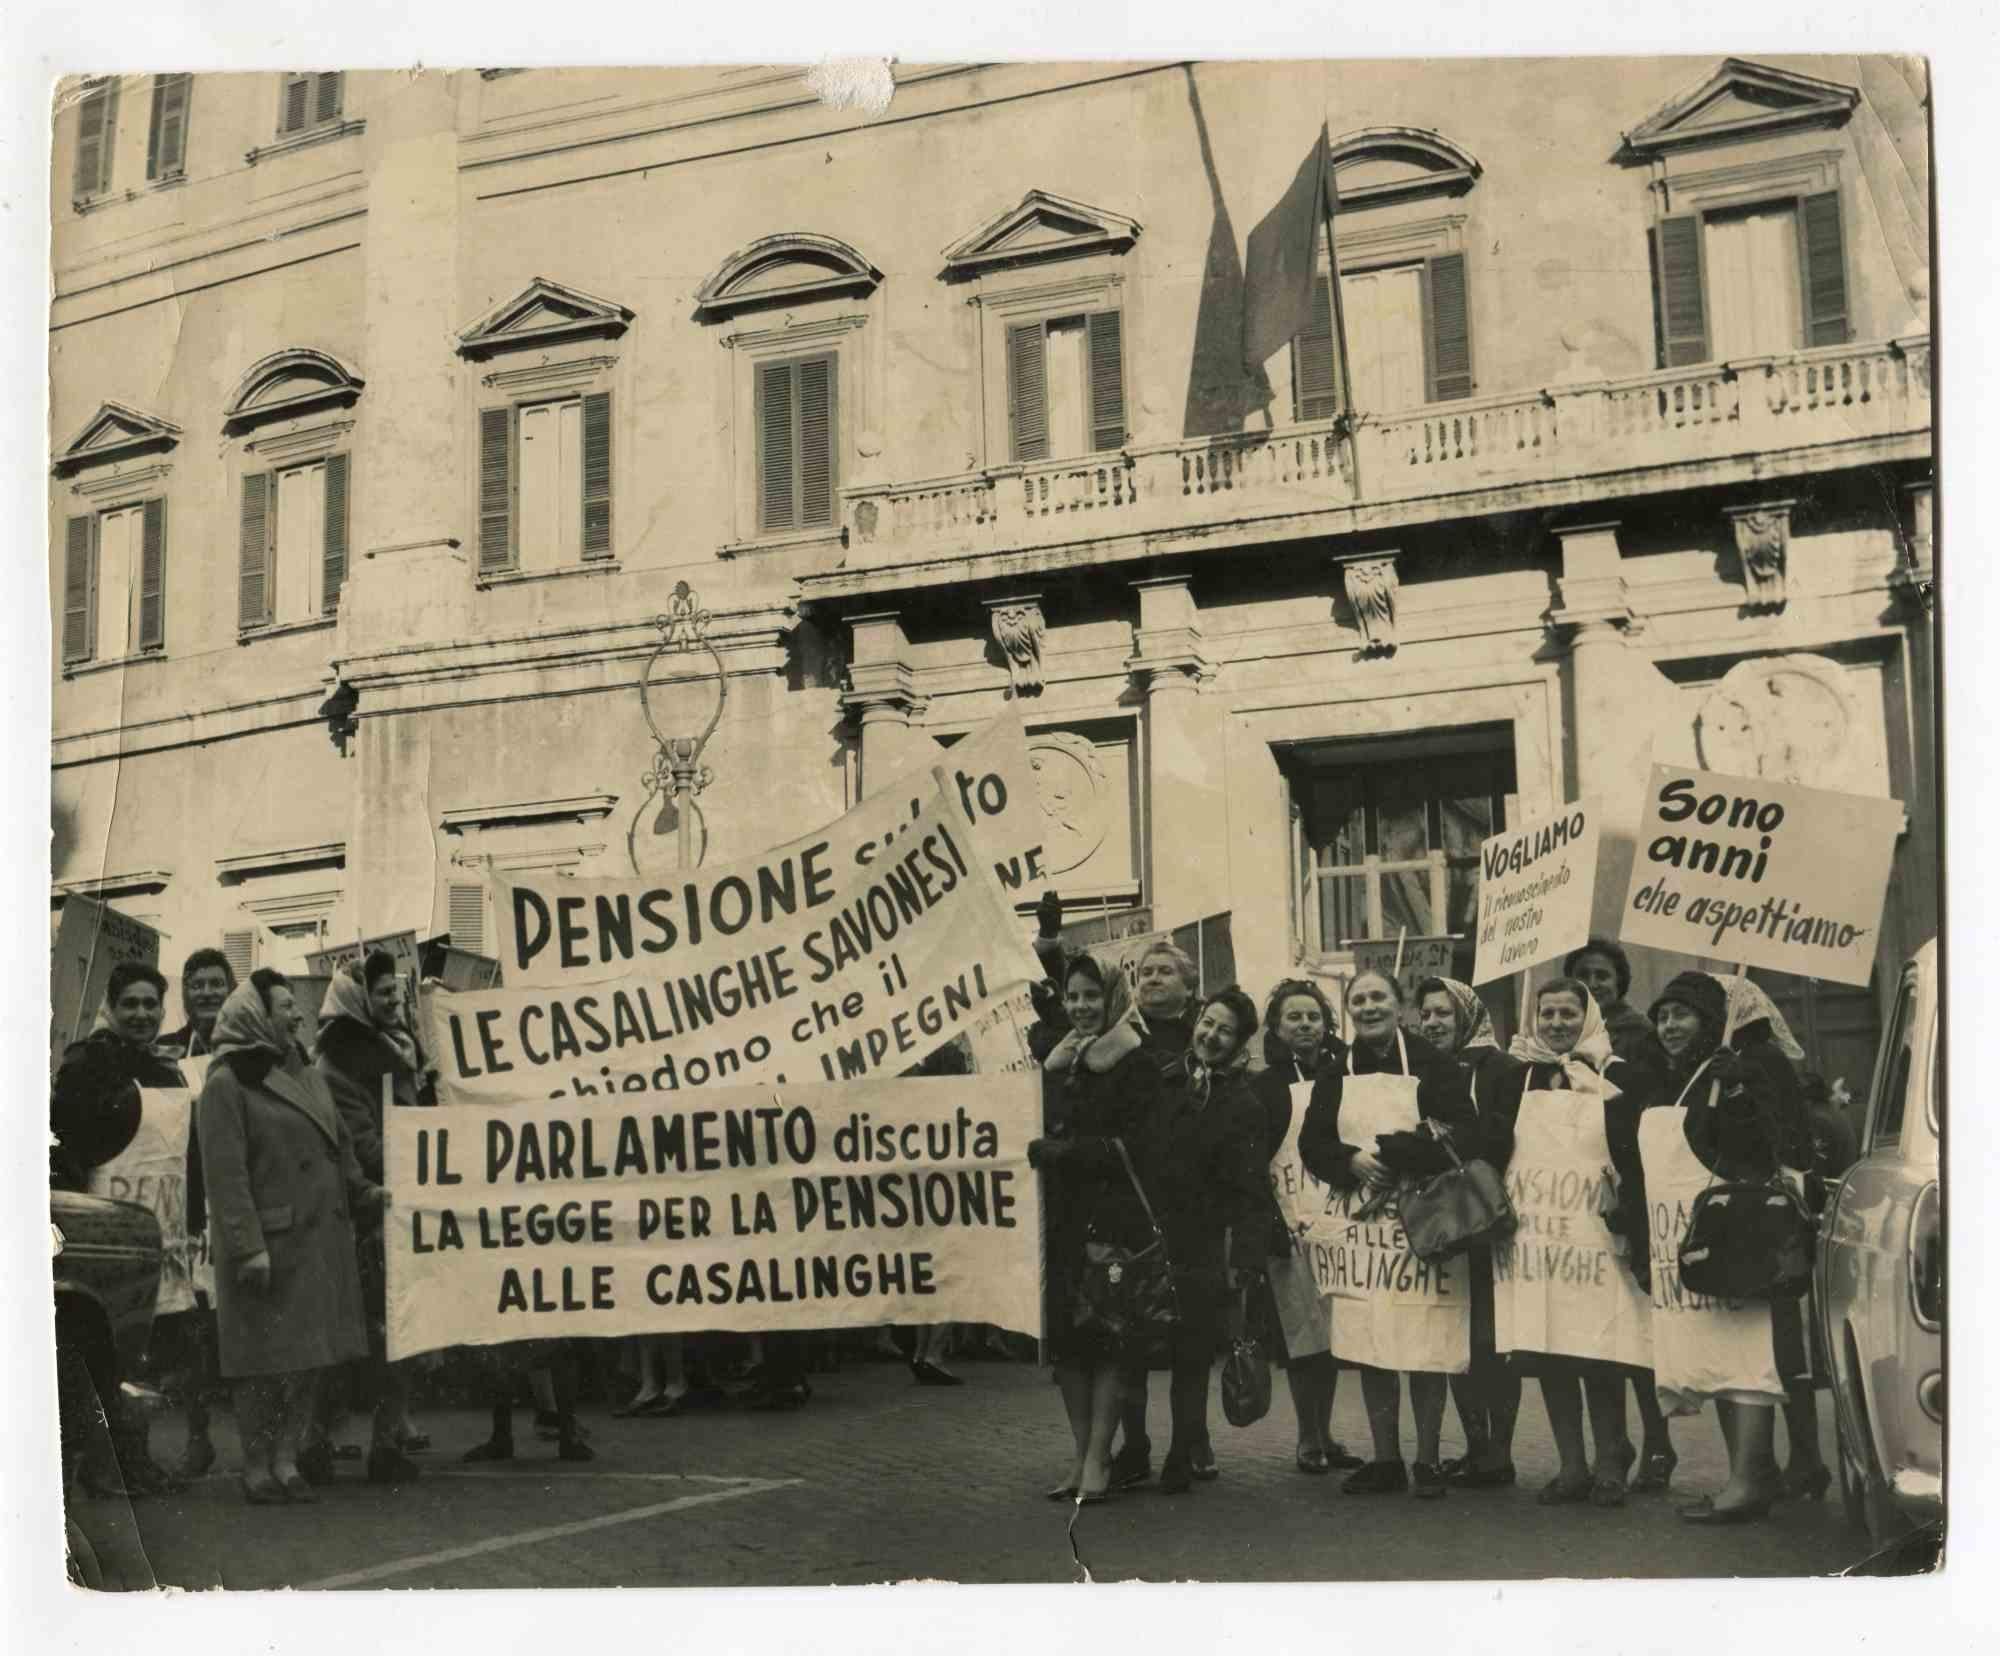 Historische Fotografien des Protests – Geschichte der feministischen Bewegung – 1963